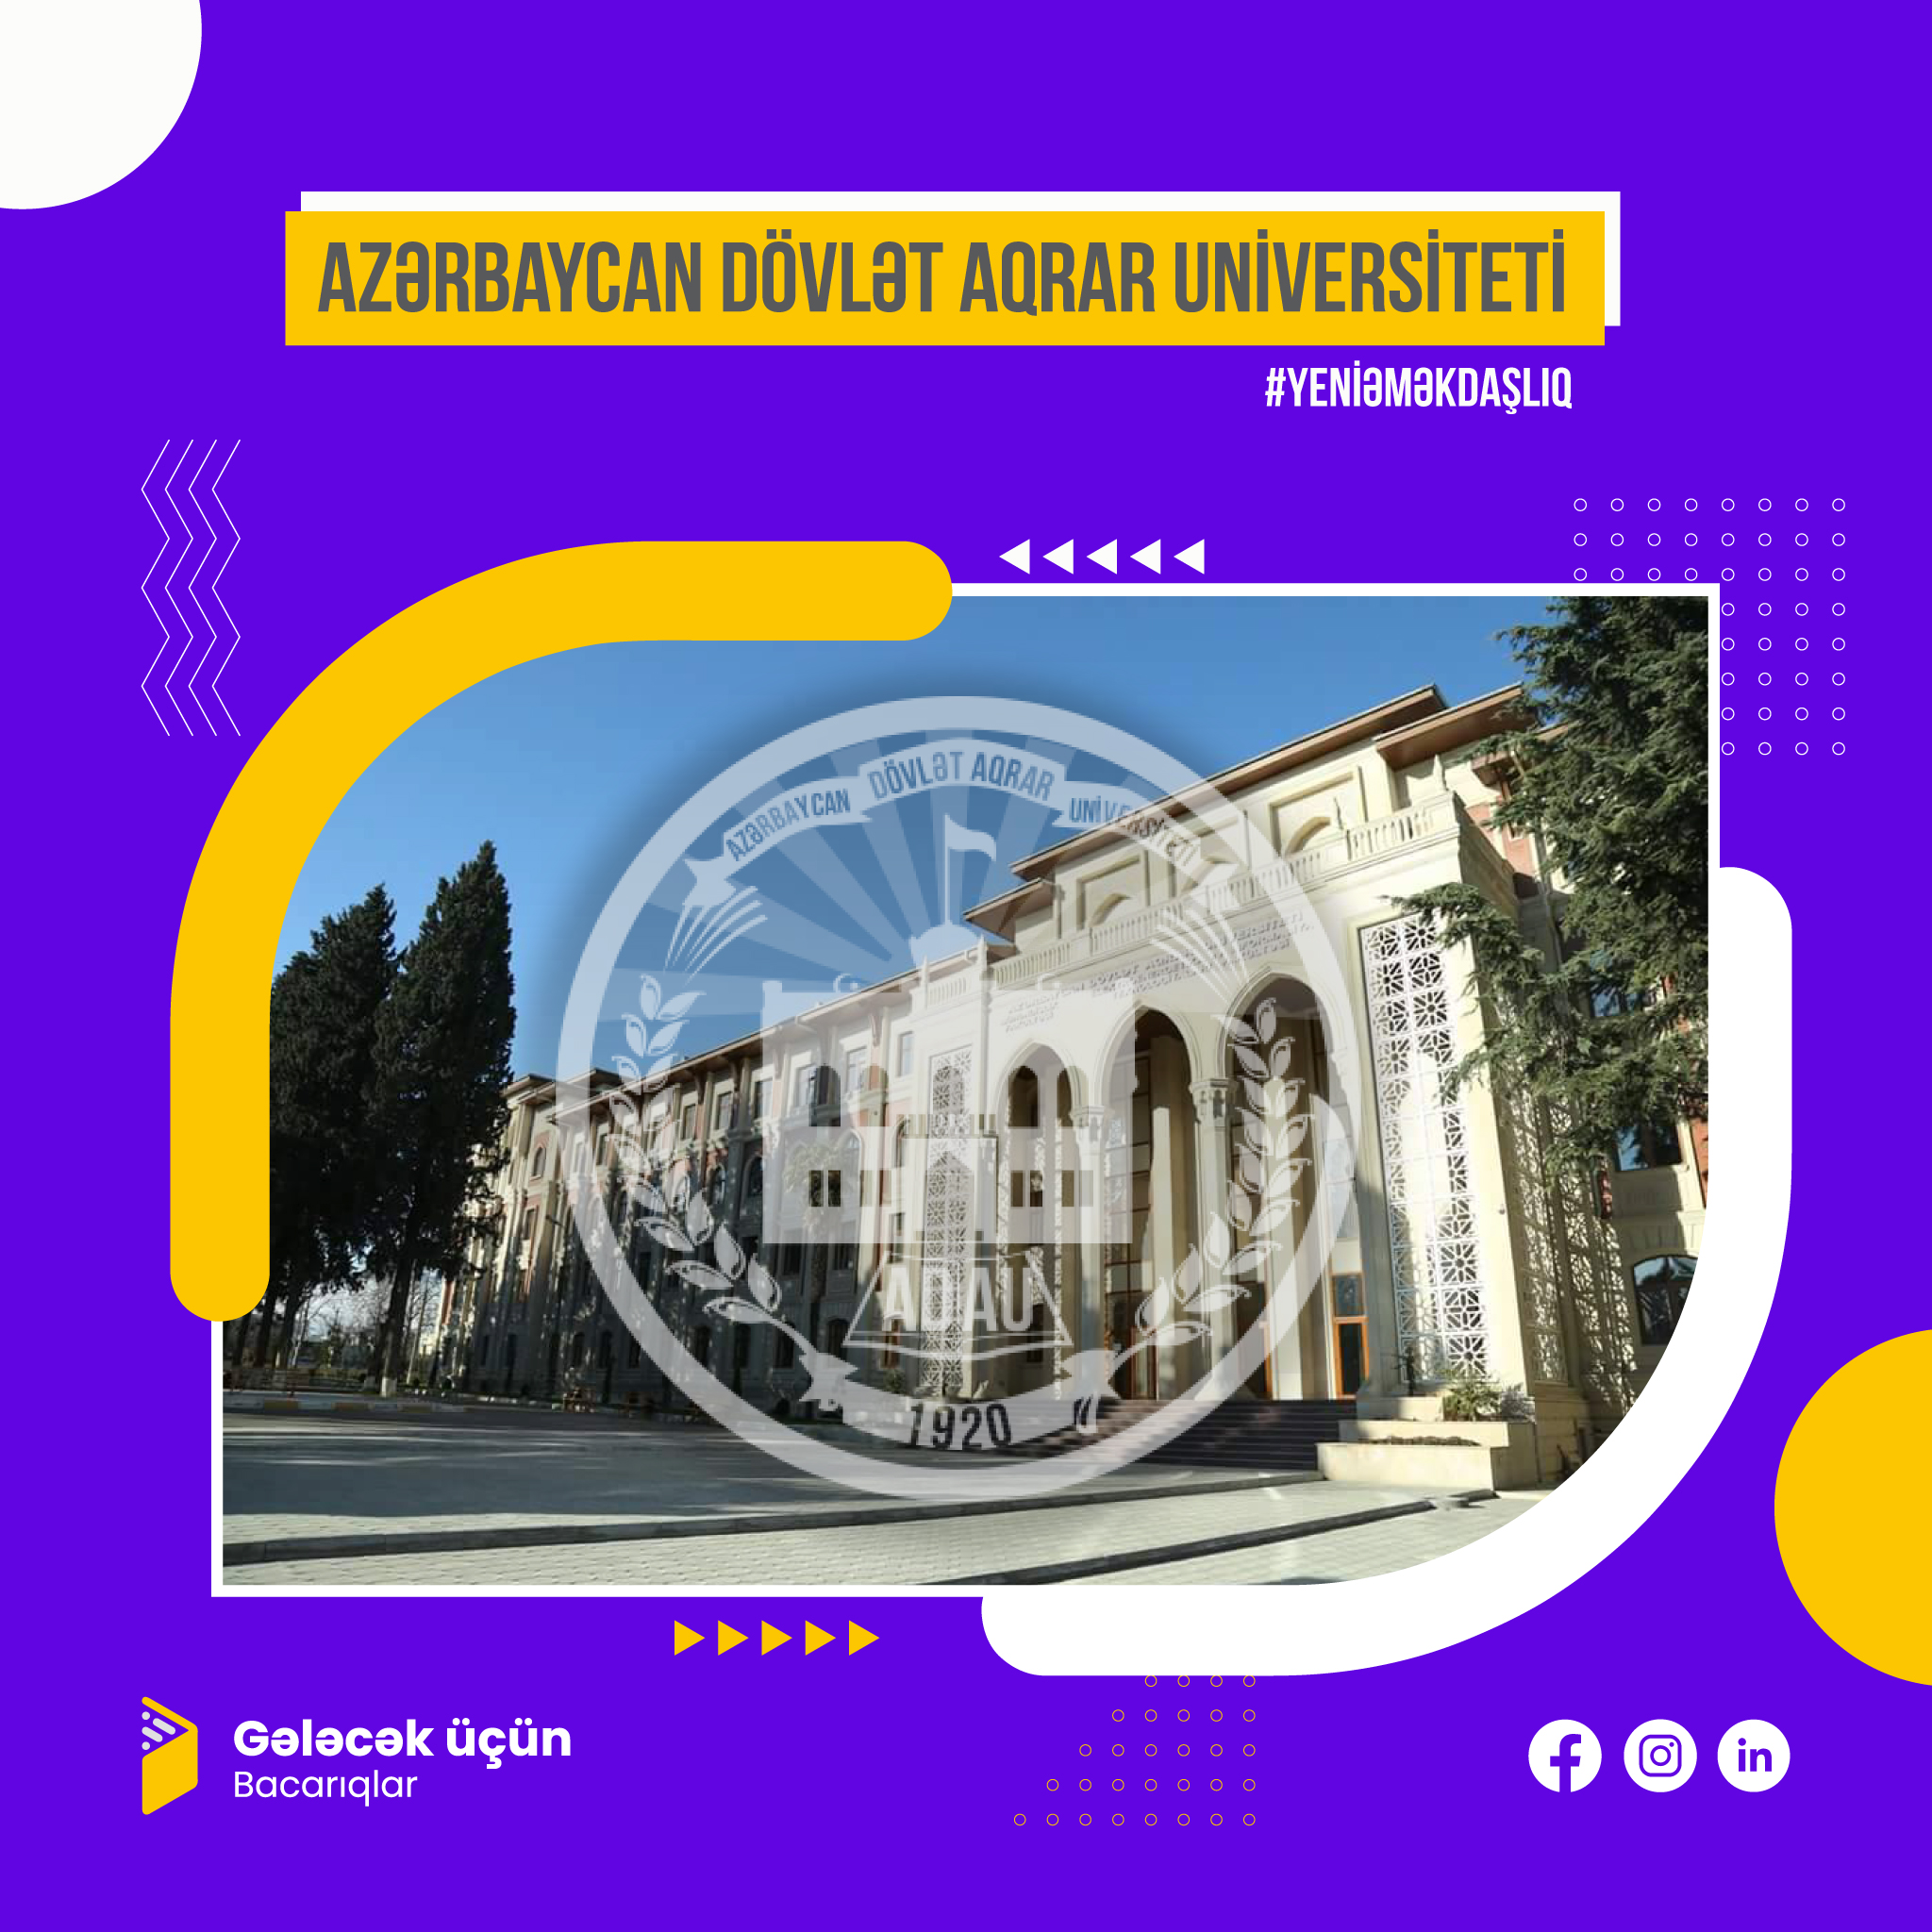 Azərbaycan Dövlət Aqrar Universiteti